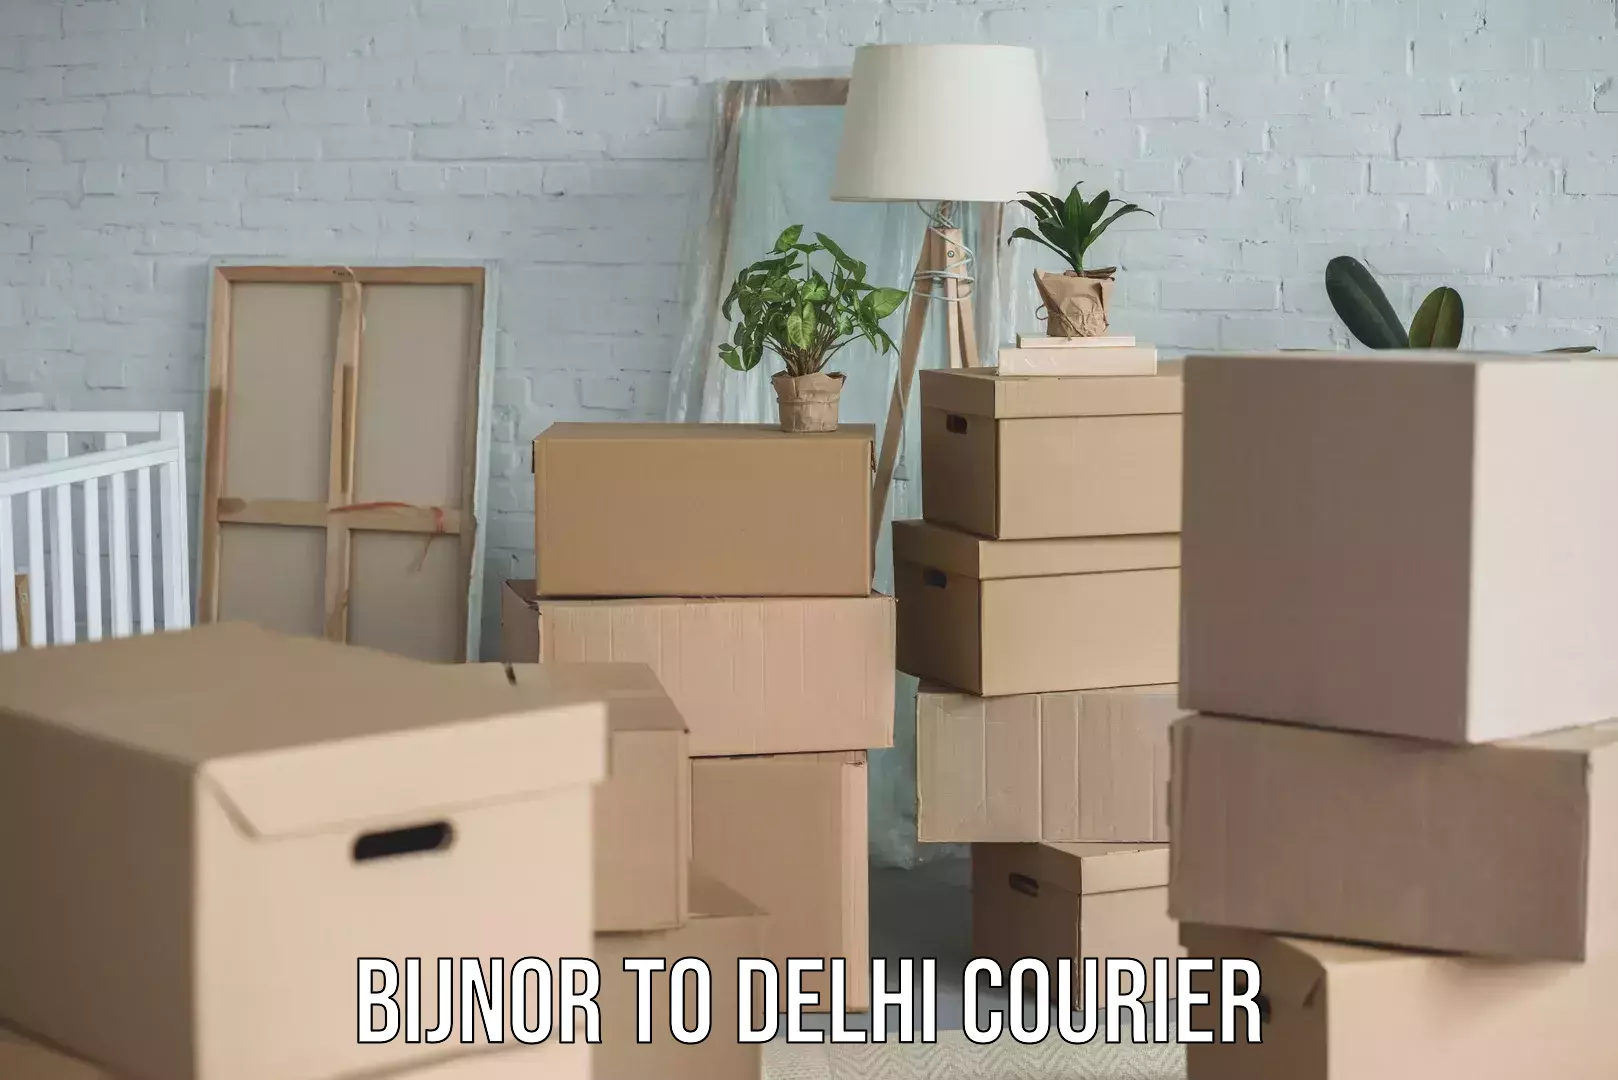 Cash on delivery service Bijnor to Delhi